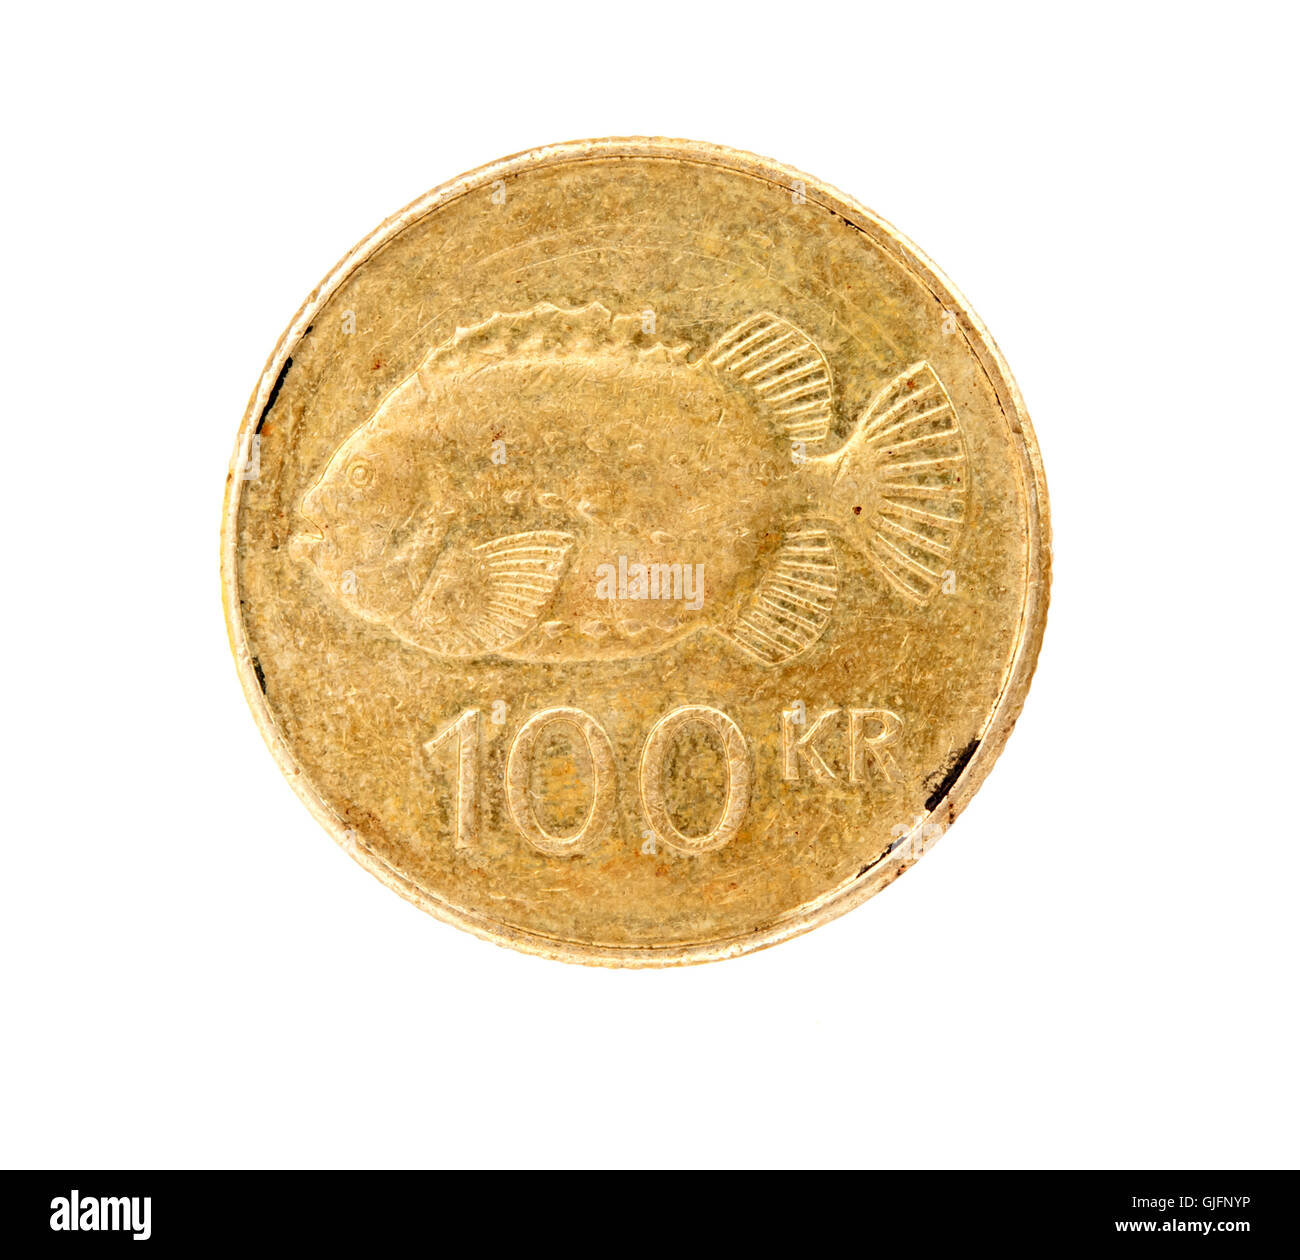 100 icelandic krona coin isolated on white background Stock Photo - Alamy